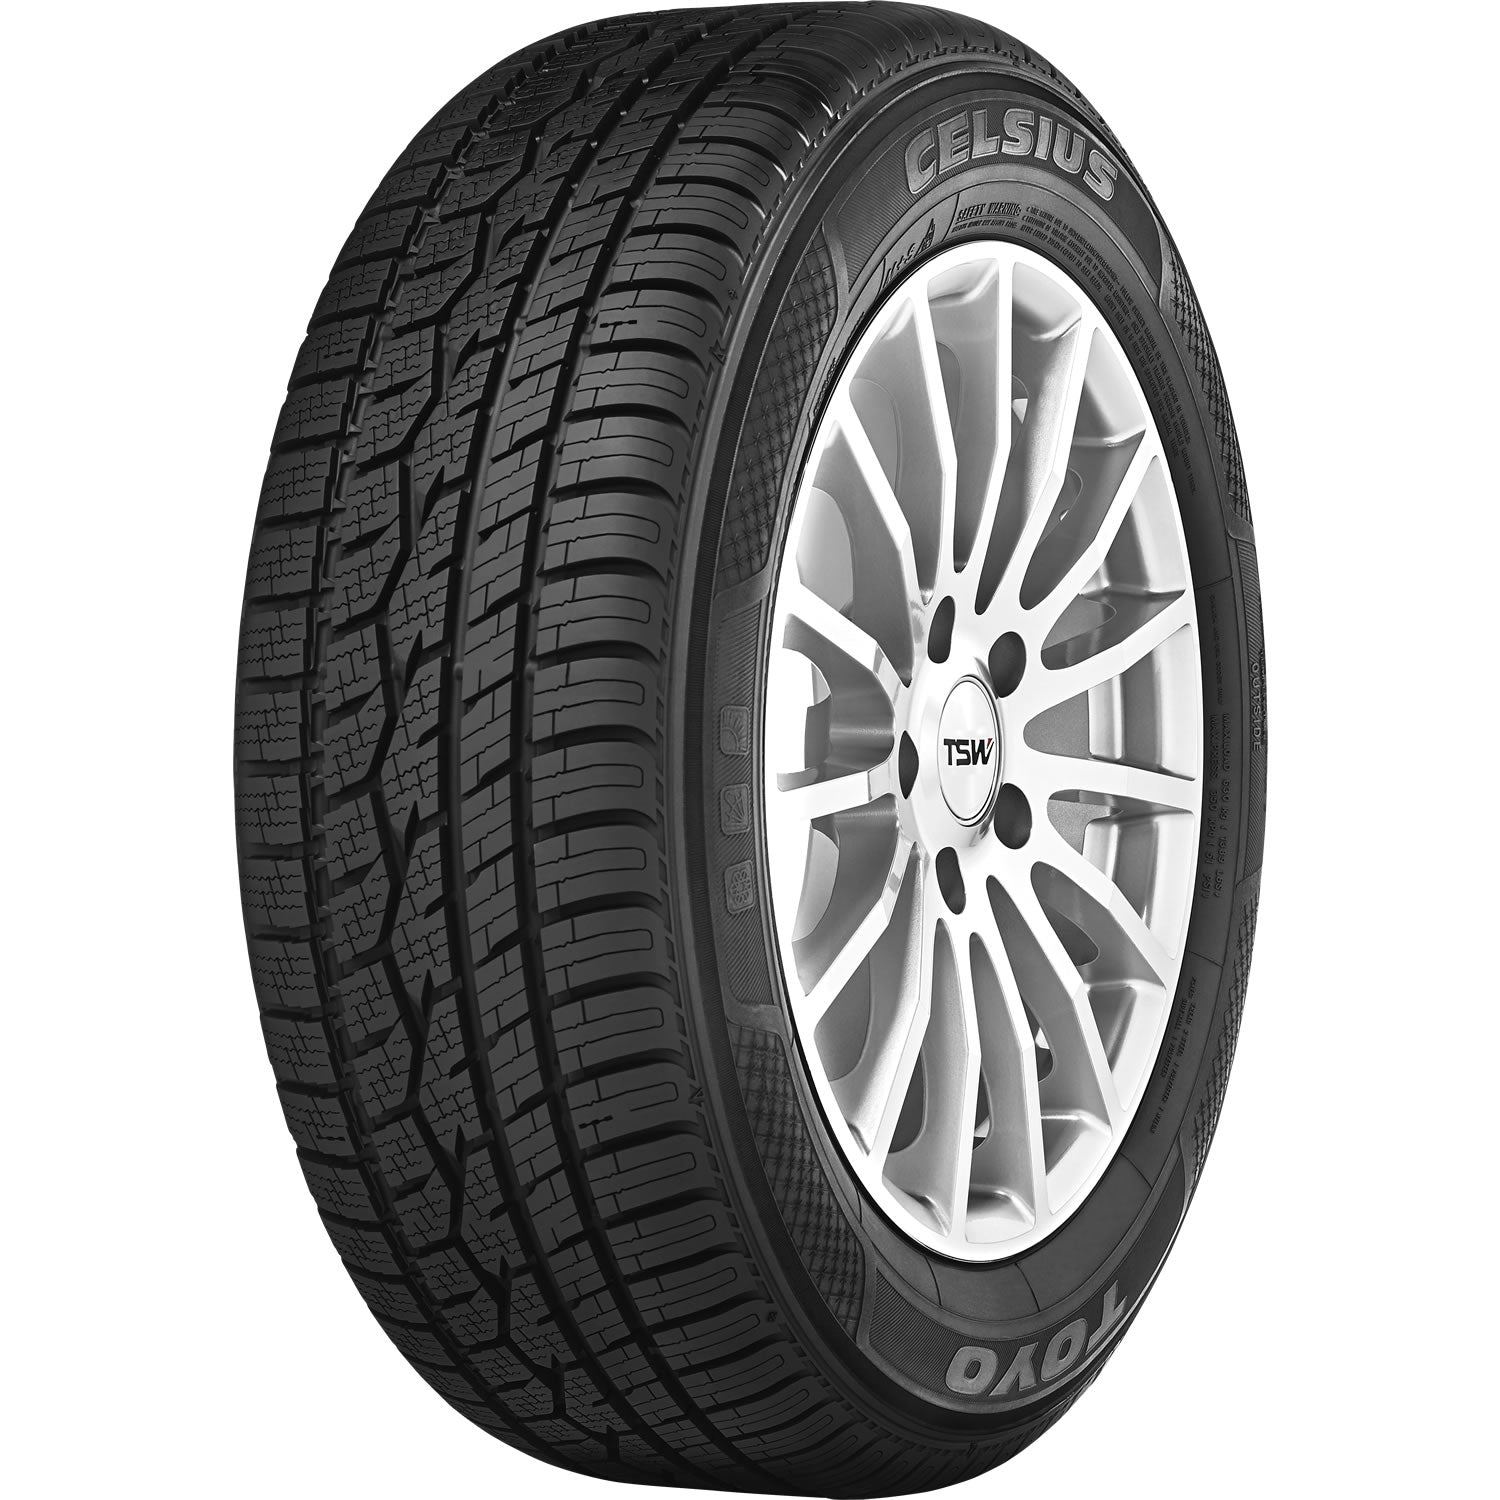 TOYO TIRES CELSIUS 235/45R17 (25.4X9.3R 17) Tires